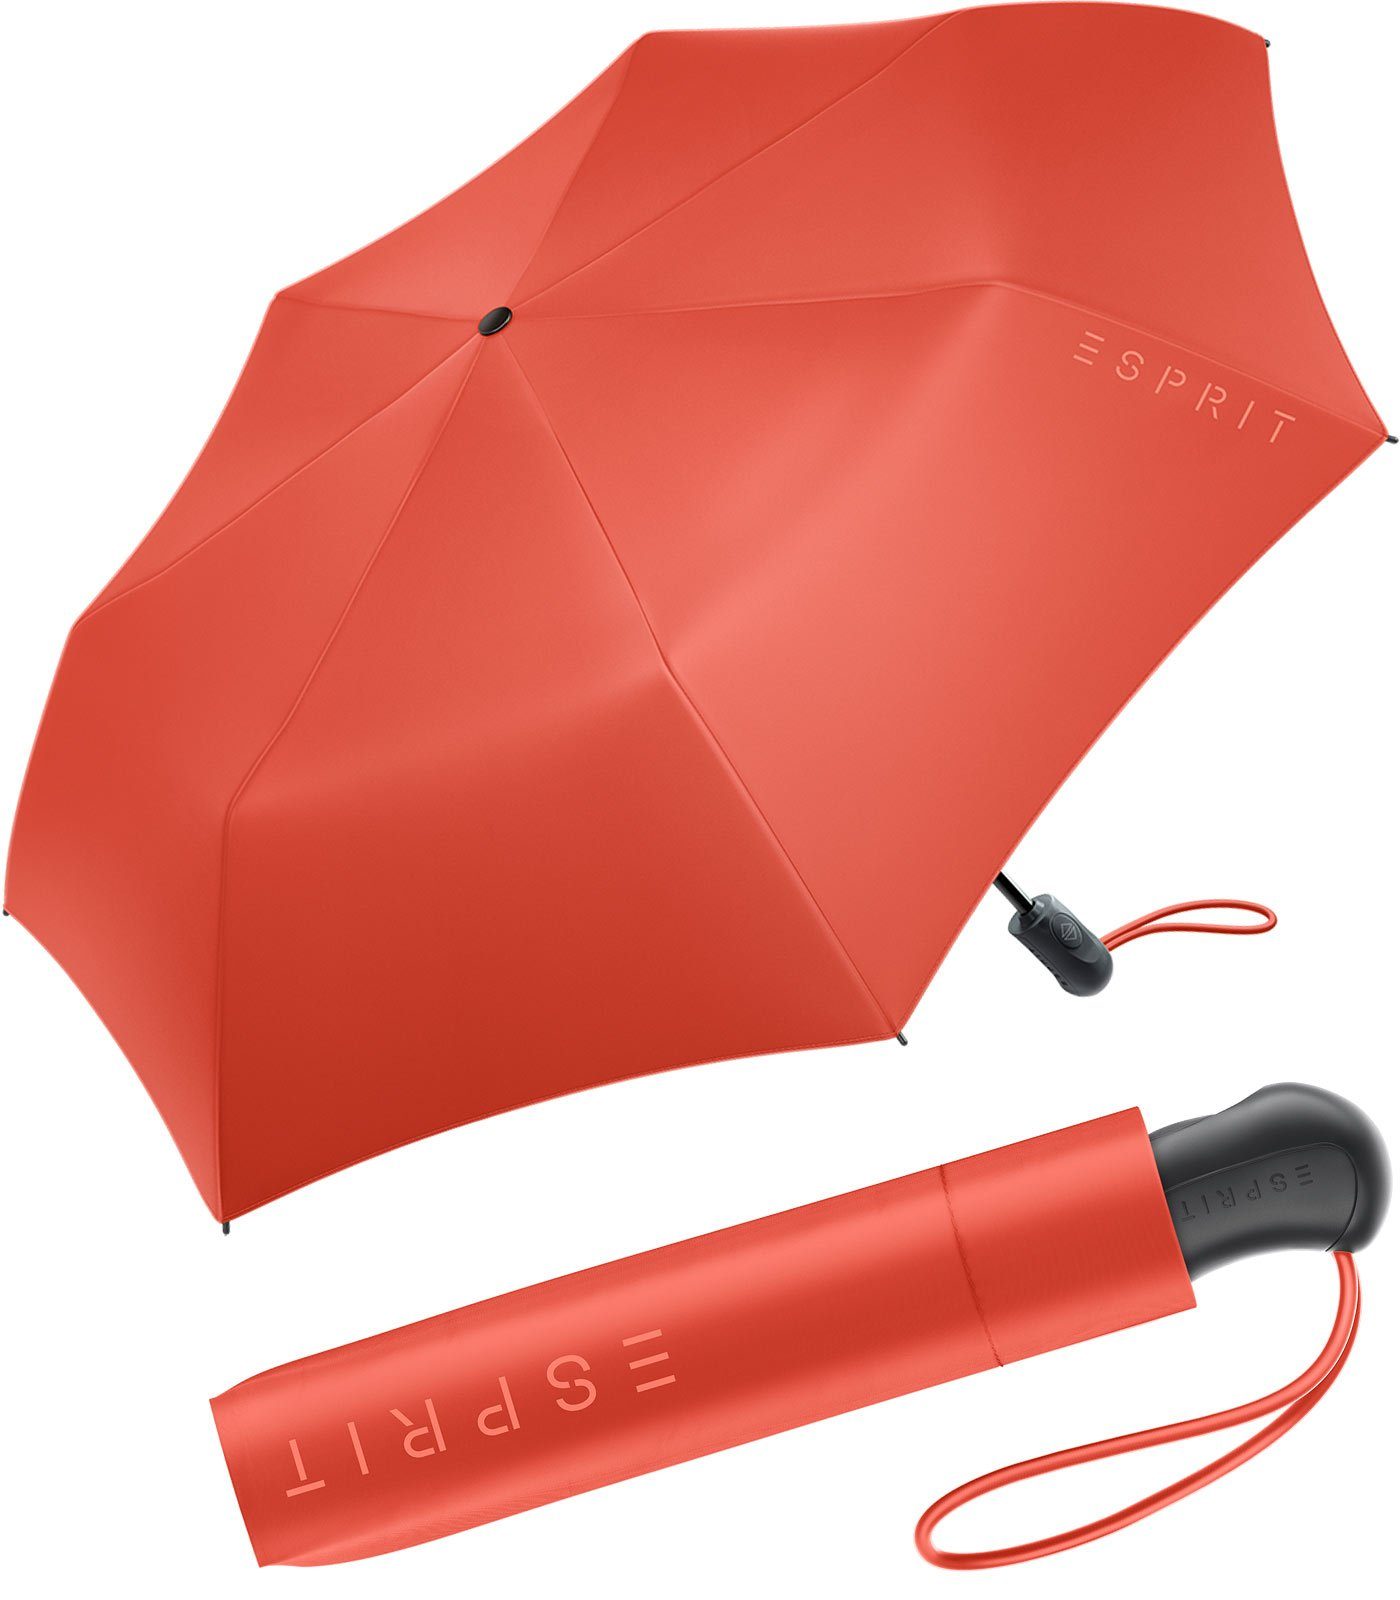 Esprit Langregenschirm Damen Easymatic Light Auf-Zu Automatik HW 2023, in den neuen Trendfarben - spicy orange